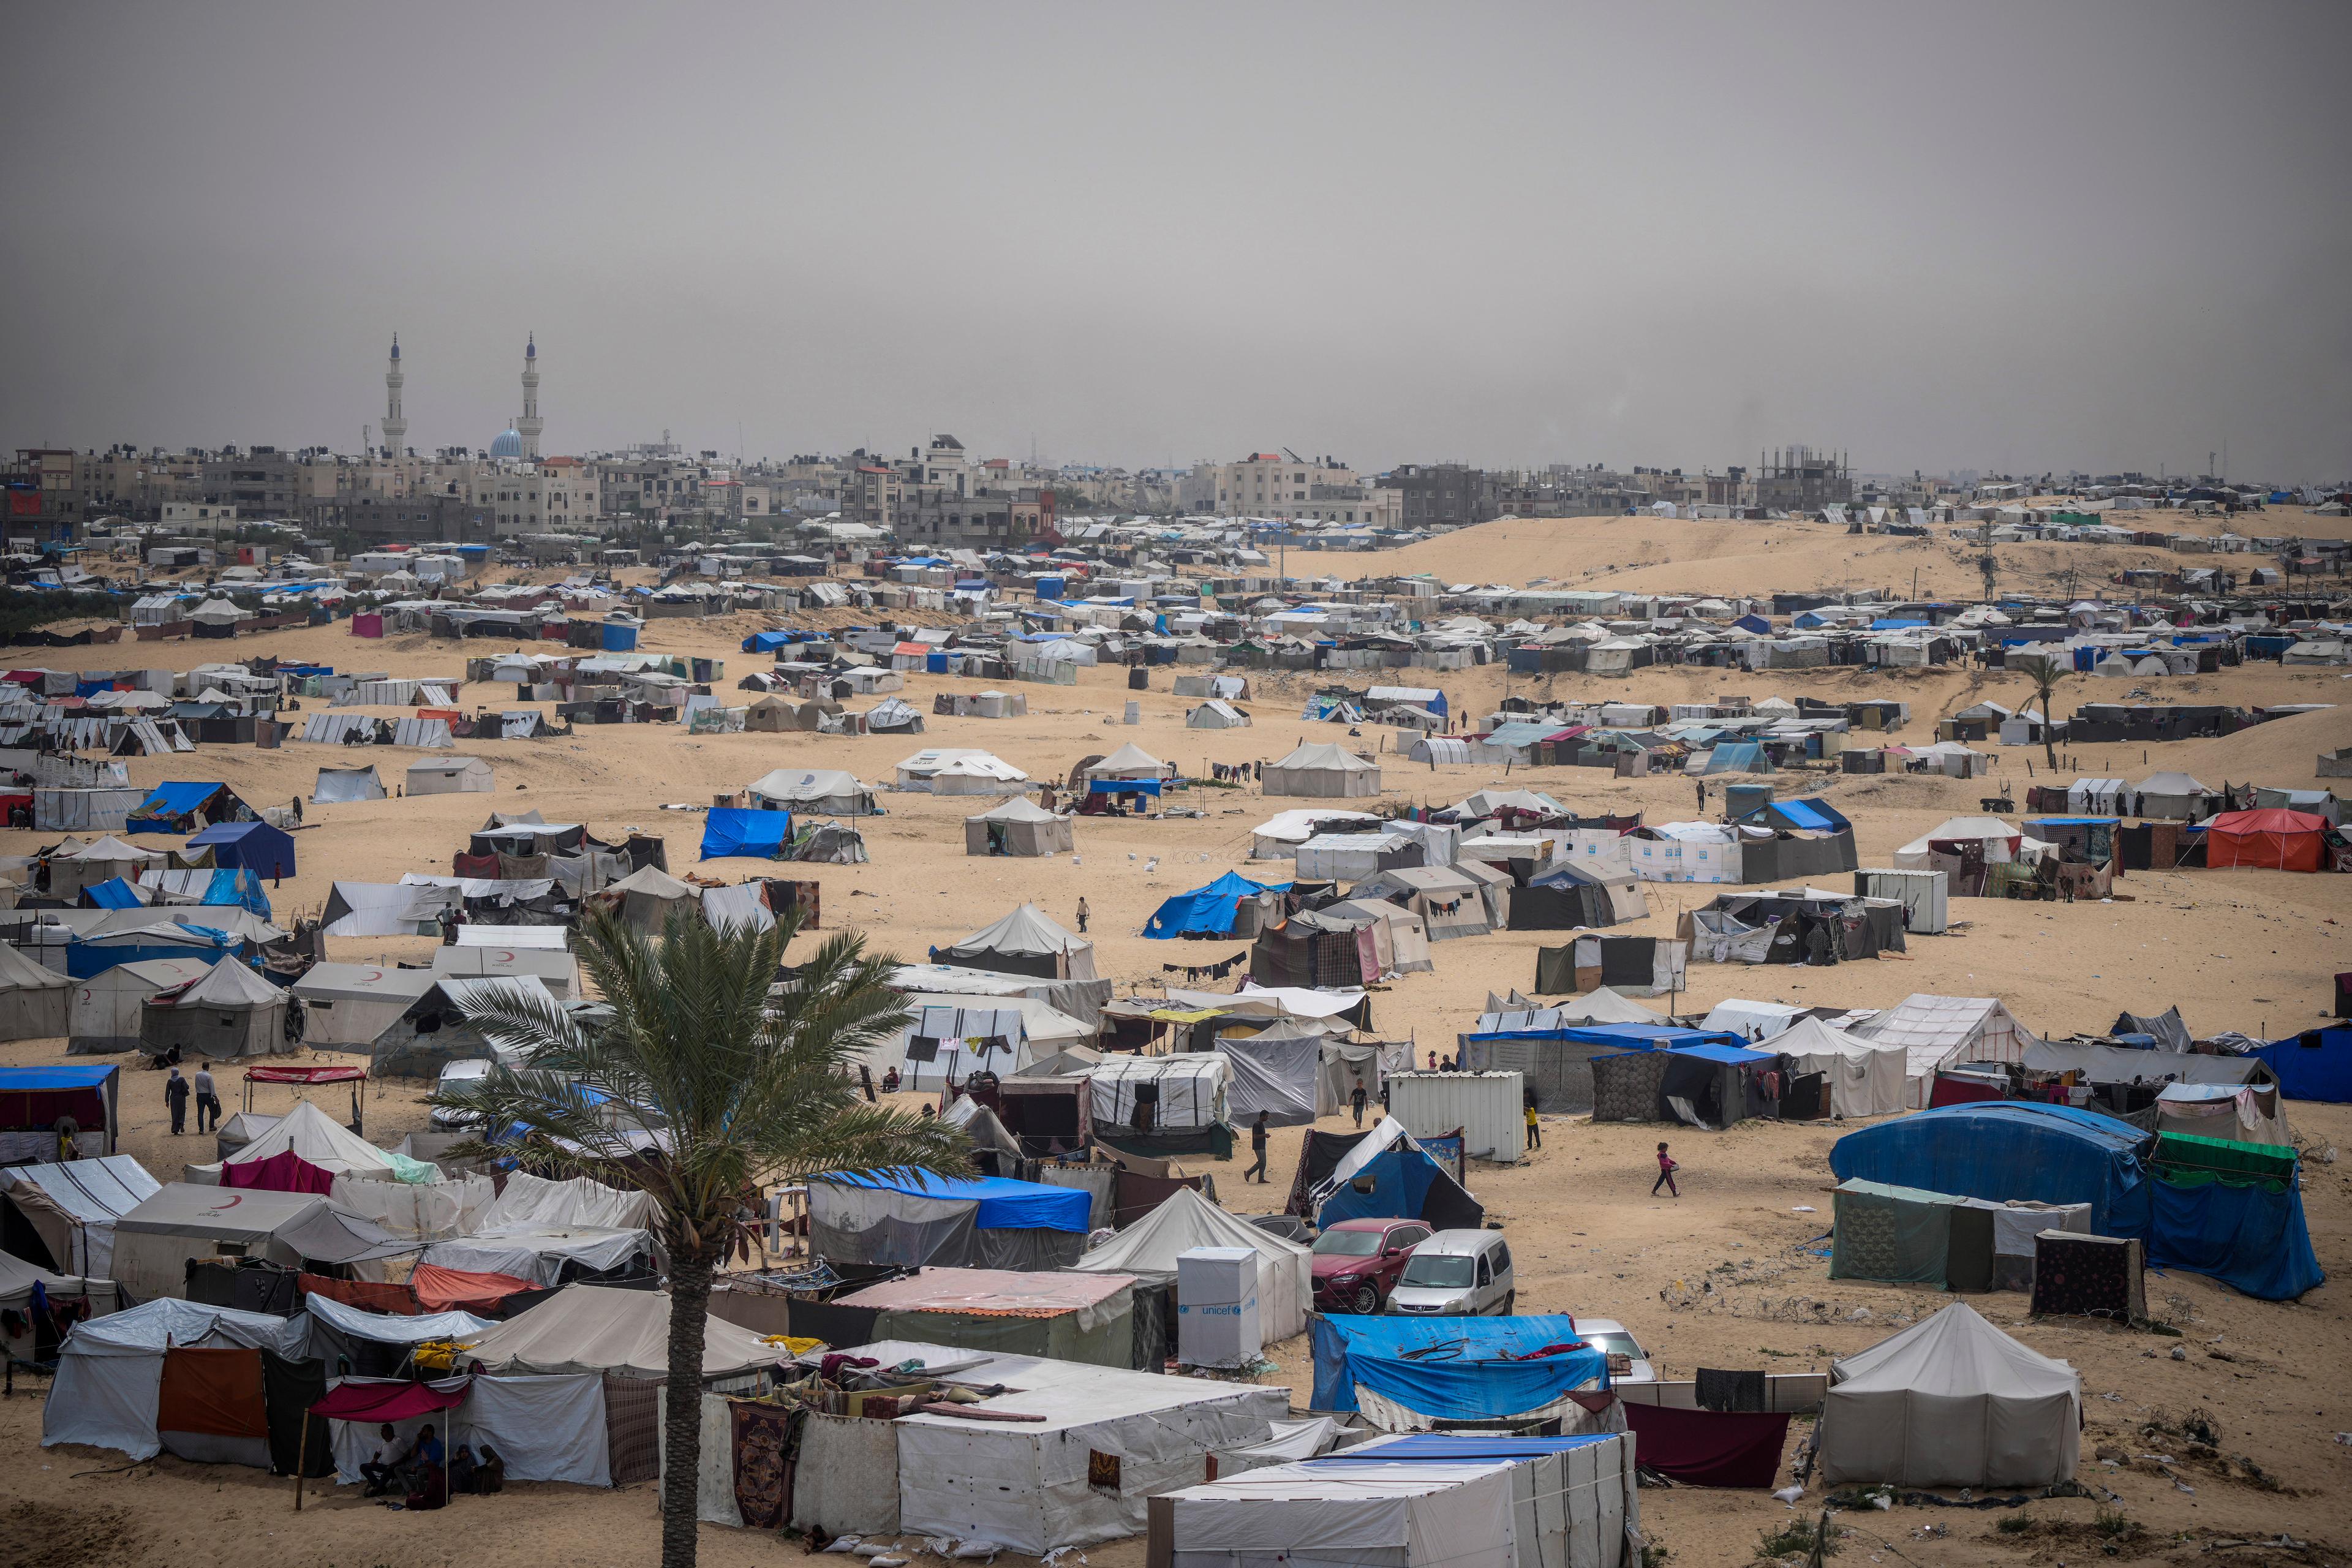 Ett av tältlägren i Rafah. Foto: Abdel Kareem Hana/AP